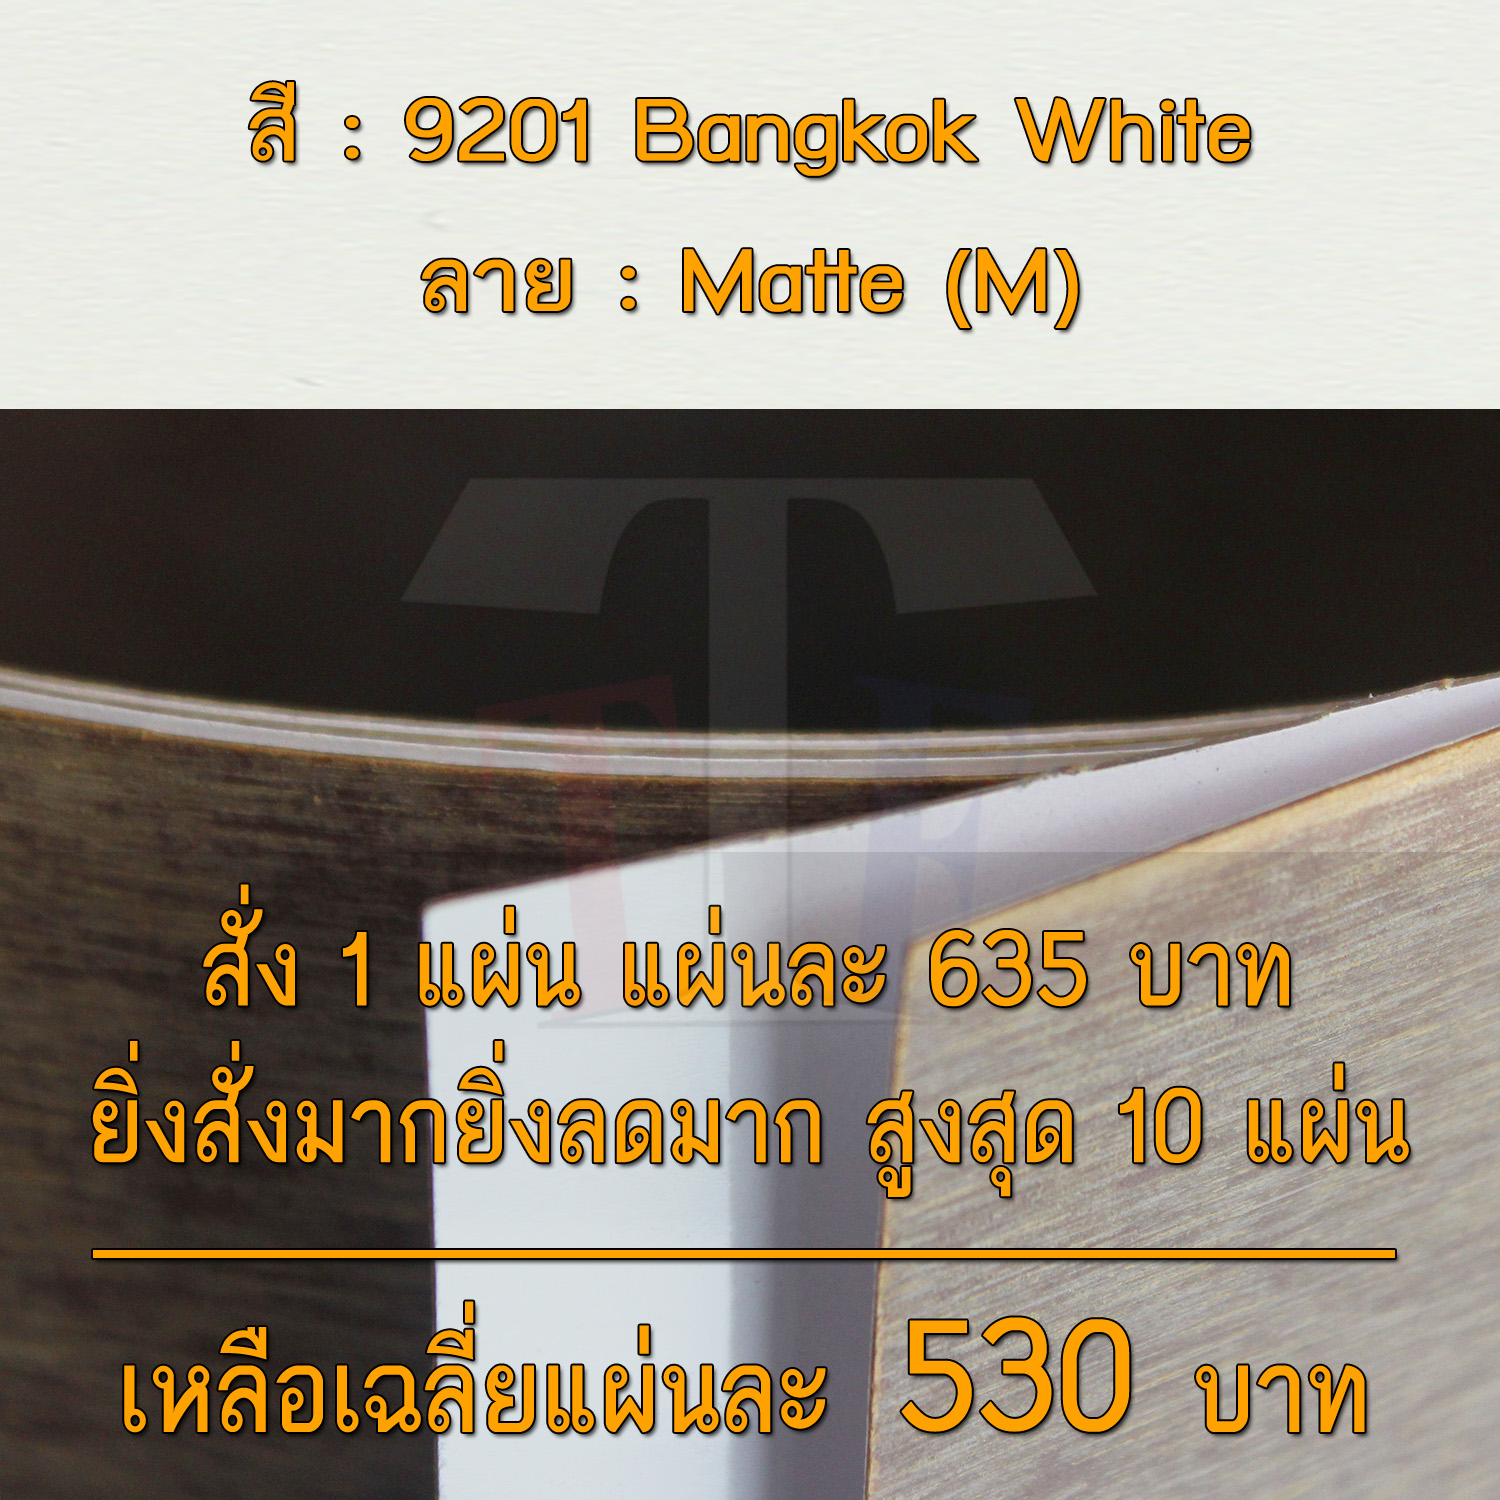 แผ่นโฟเมก้า แผ่นลามิเนต ยี่ห้อ TD Board สีขาว รหัส 9201 Bangkok White พื้นผิวลาย Matte (M) ขนาด 1220 x 2440 มม. หนา 0.60 มม. ใช้สำหรับงานตกแต่งภายใน งานปิดผิวเฟอร์นิเจอร์ ผนัง และอื่นๆ เพื่อเพิ่มความสวยงาม formica laminate 9201M